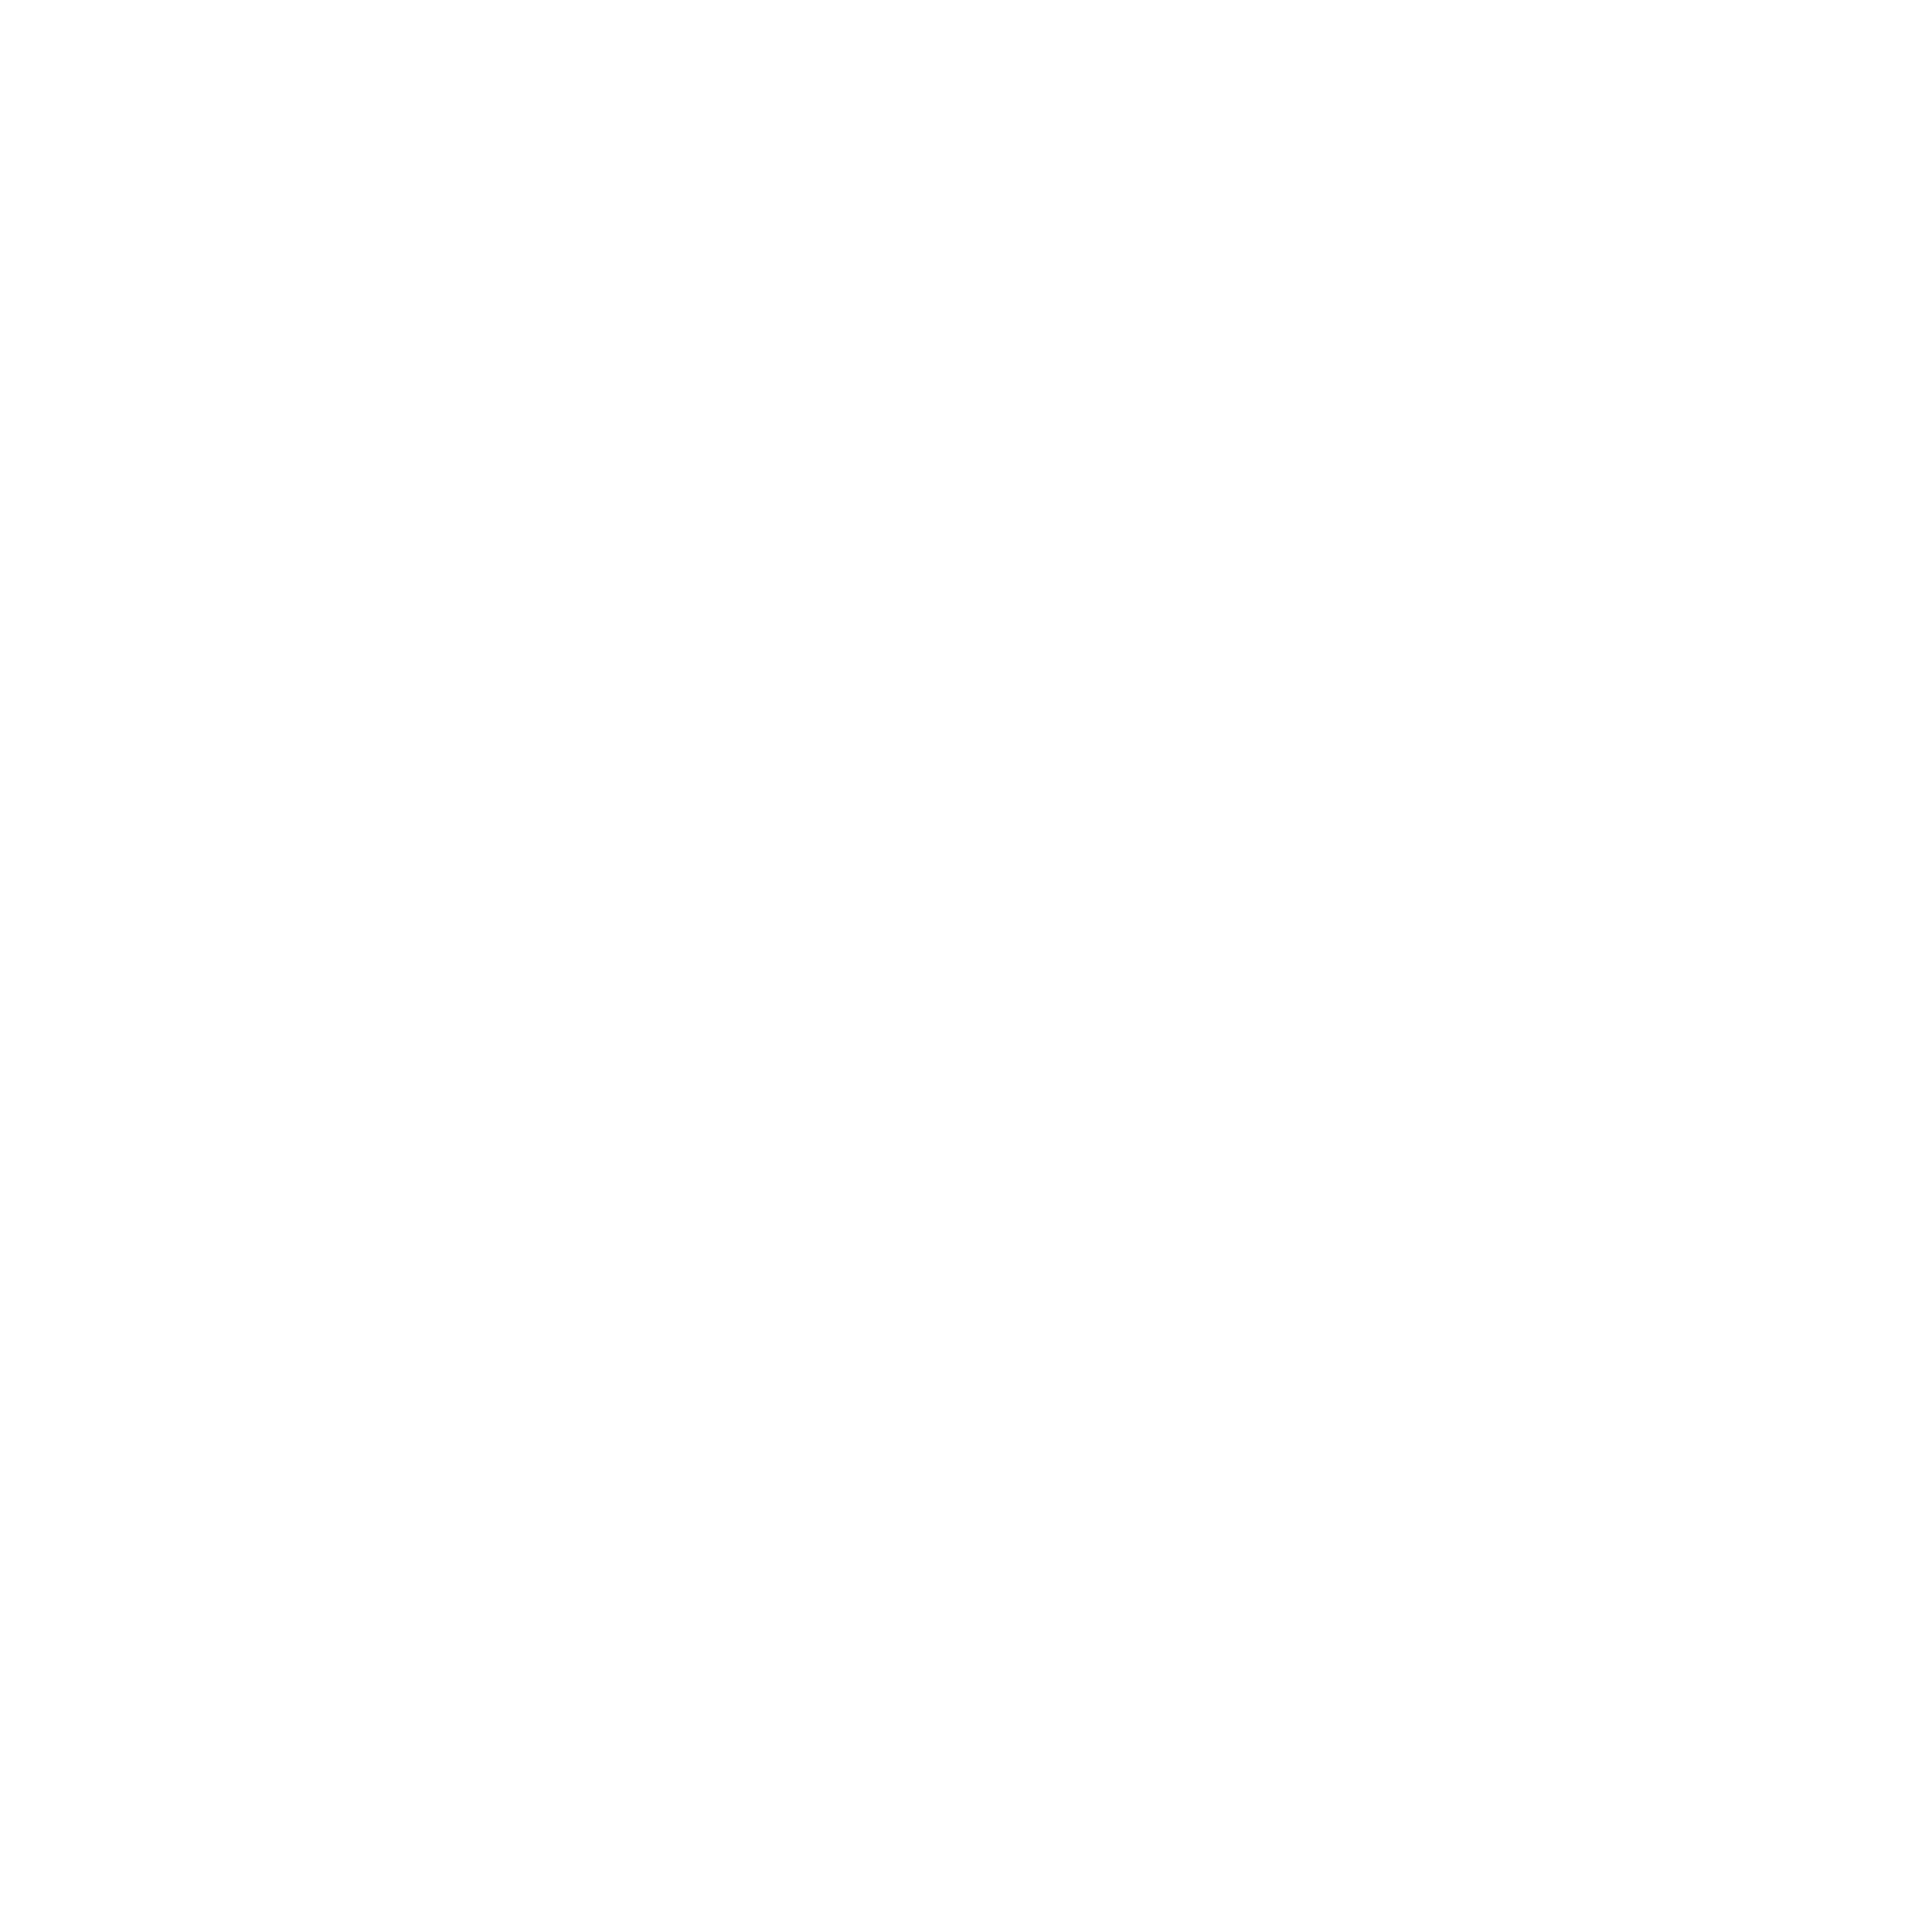 Huebsch Logo - Huebsch Logo PNG Transparent & SVG Vector - Freebie Supply